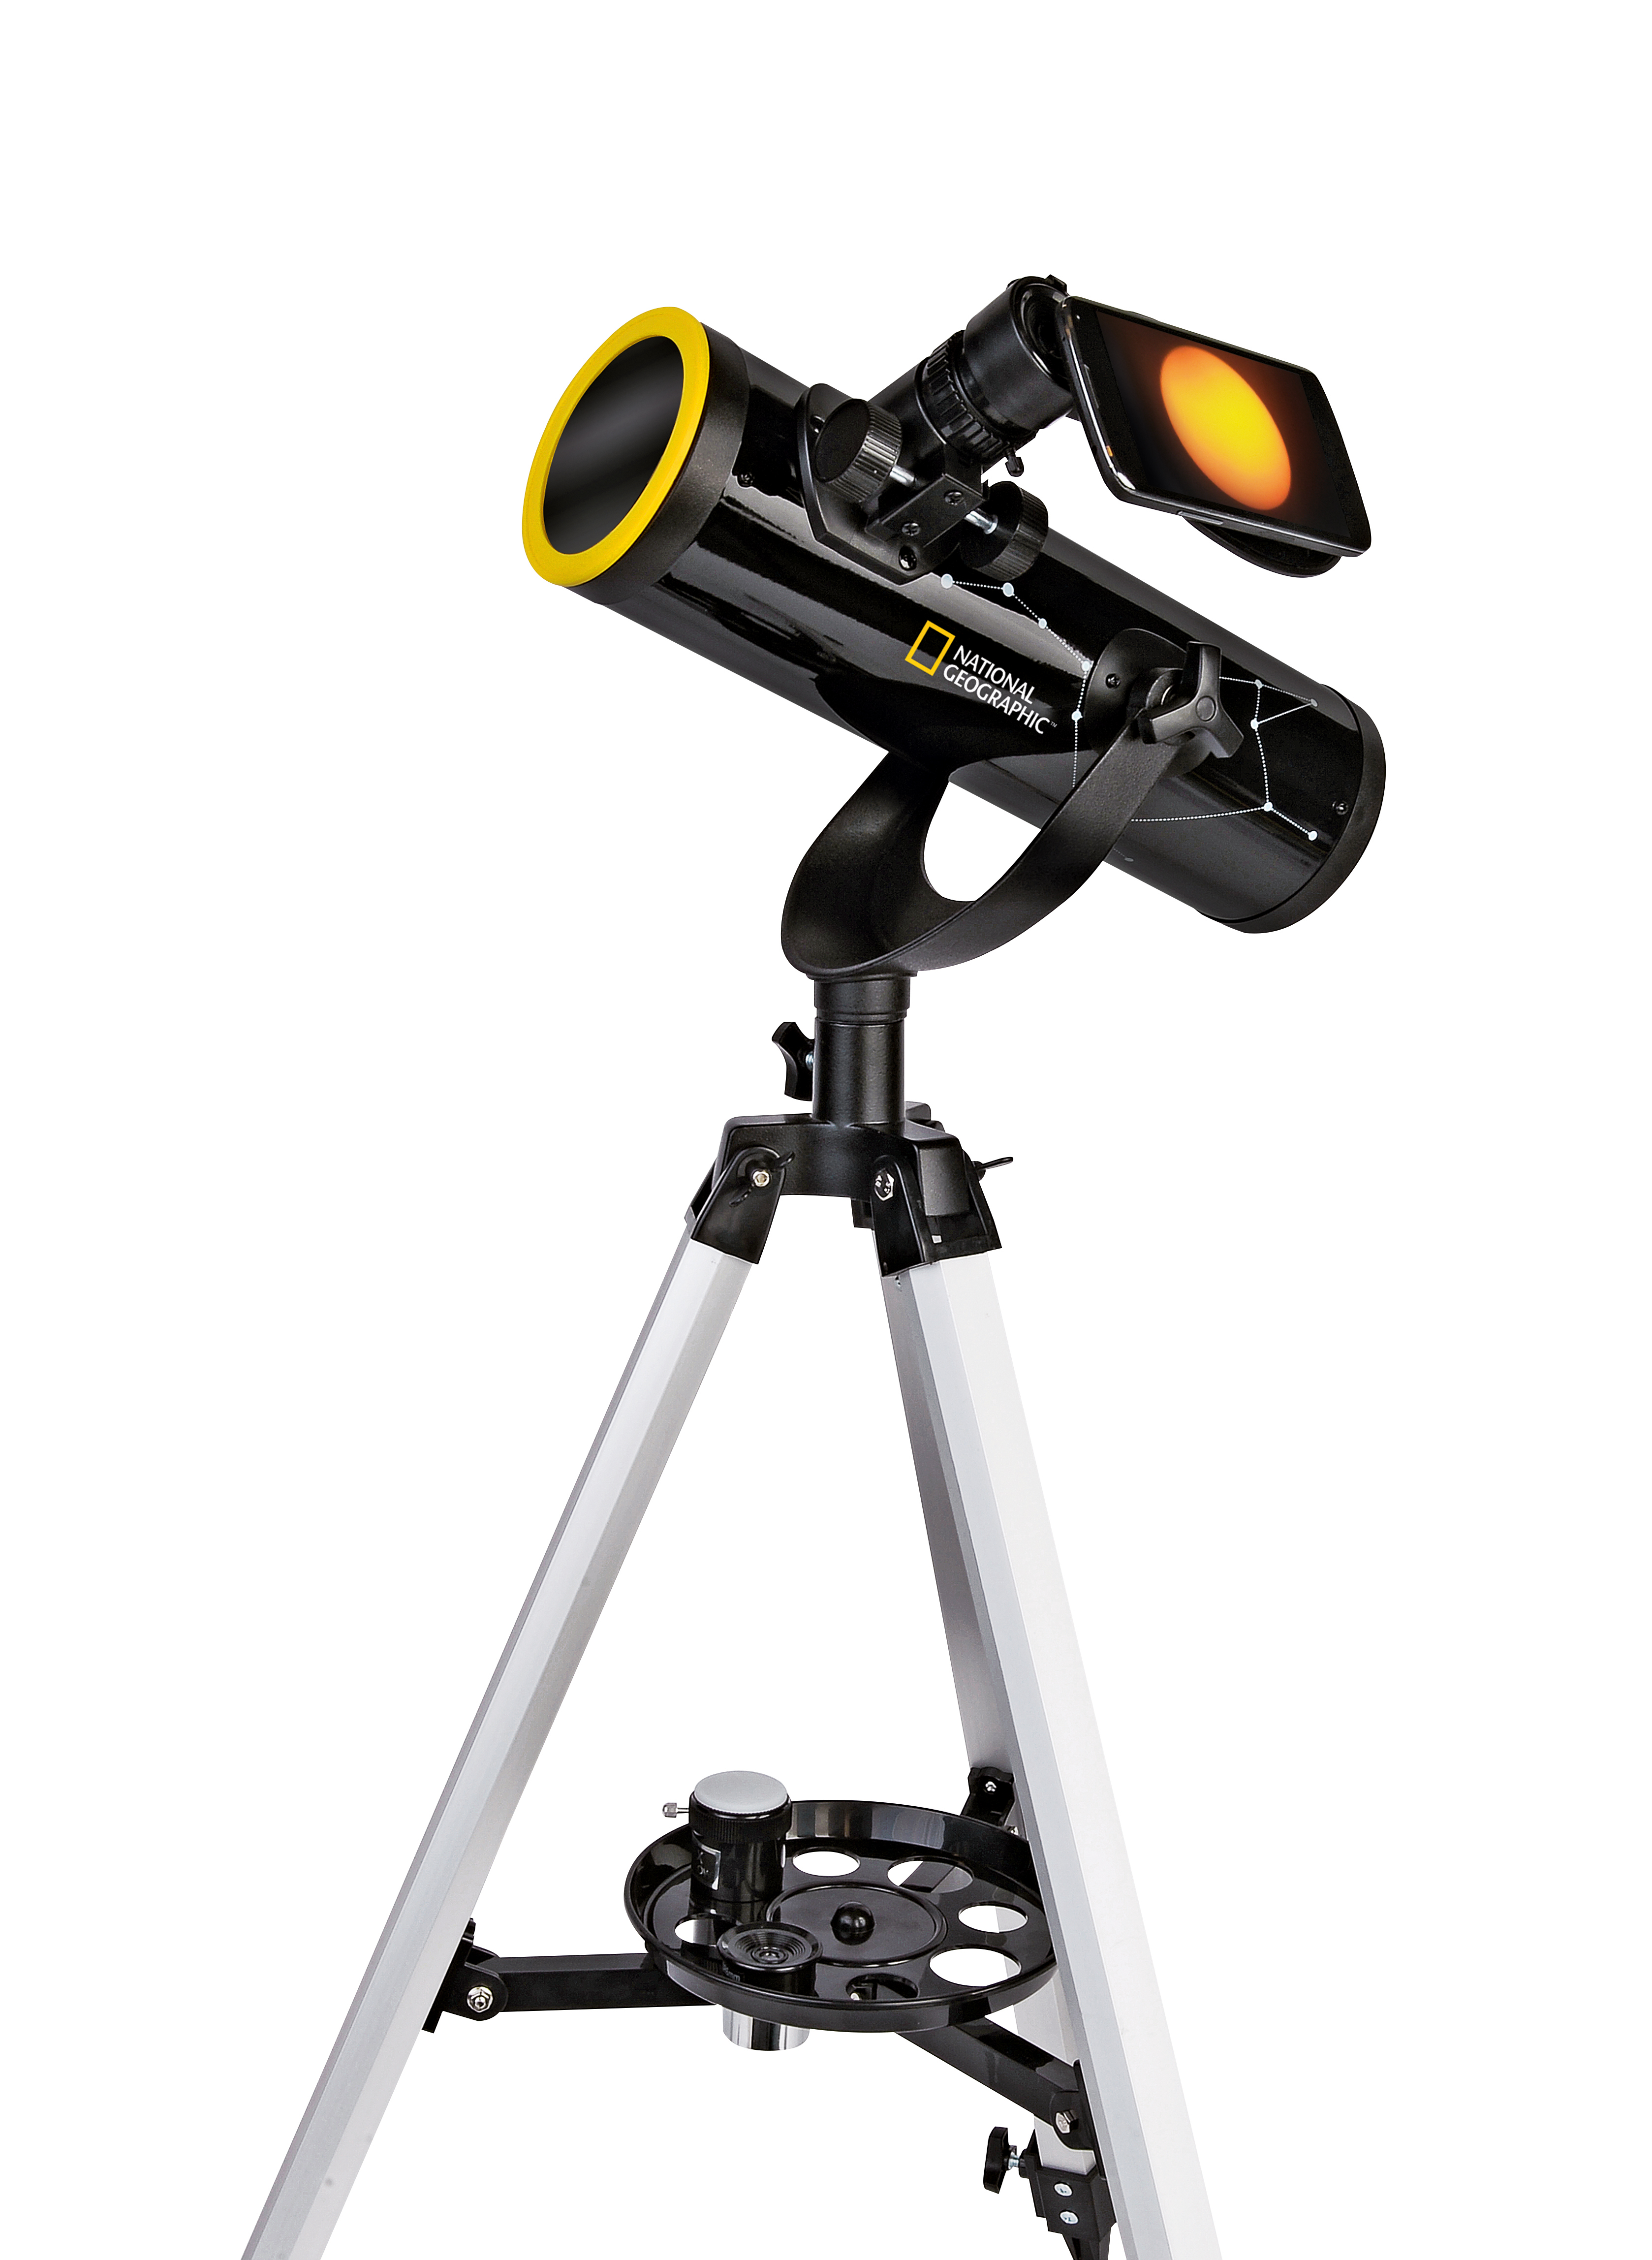 NATIONAL GEOGRAPHIC 76/350 Teleskop mit Sonnenfilter und Smartphone-Halter